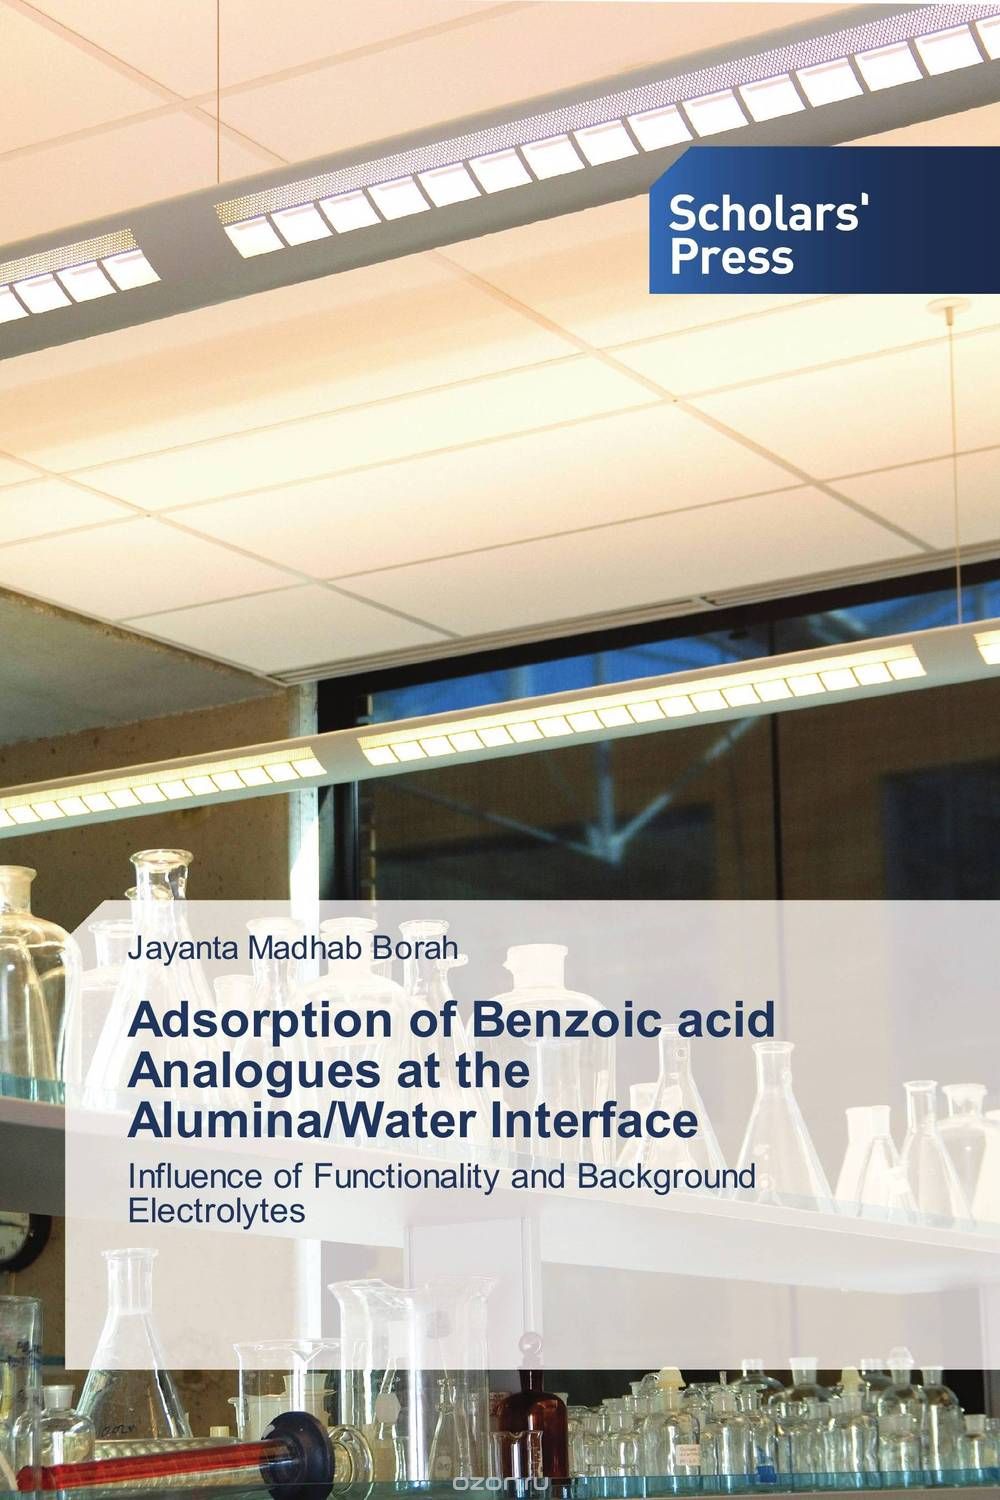 Adsorption of Benzoic acid Analogues at the Alumina/Water Interface